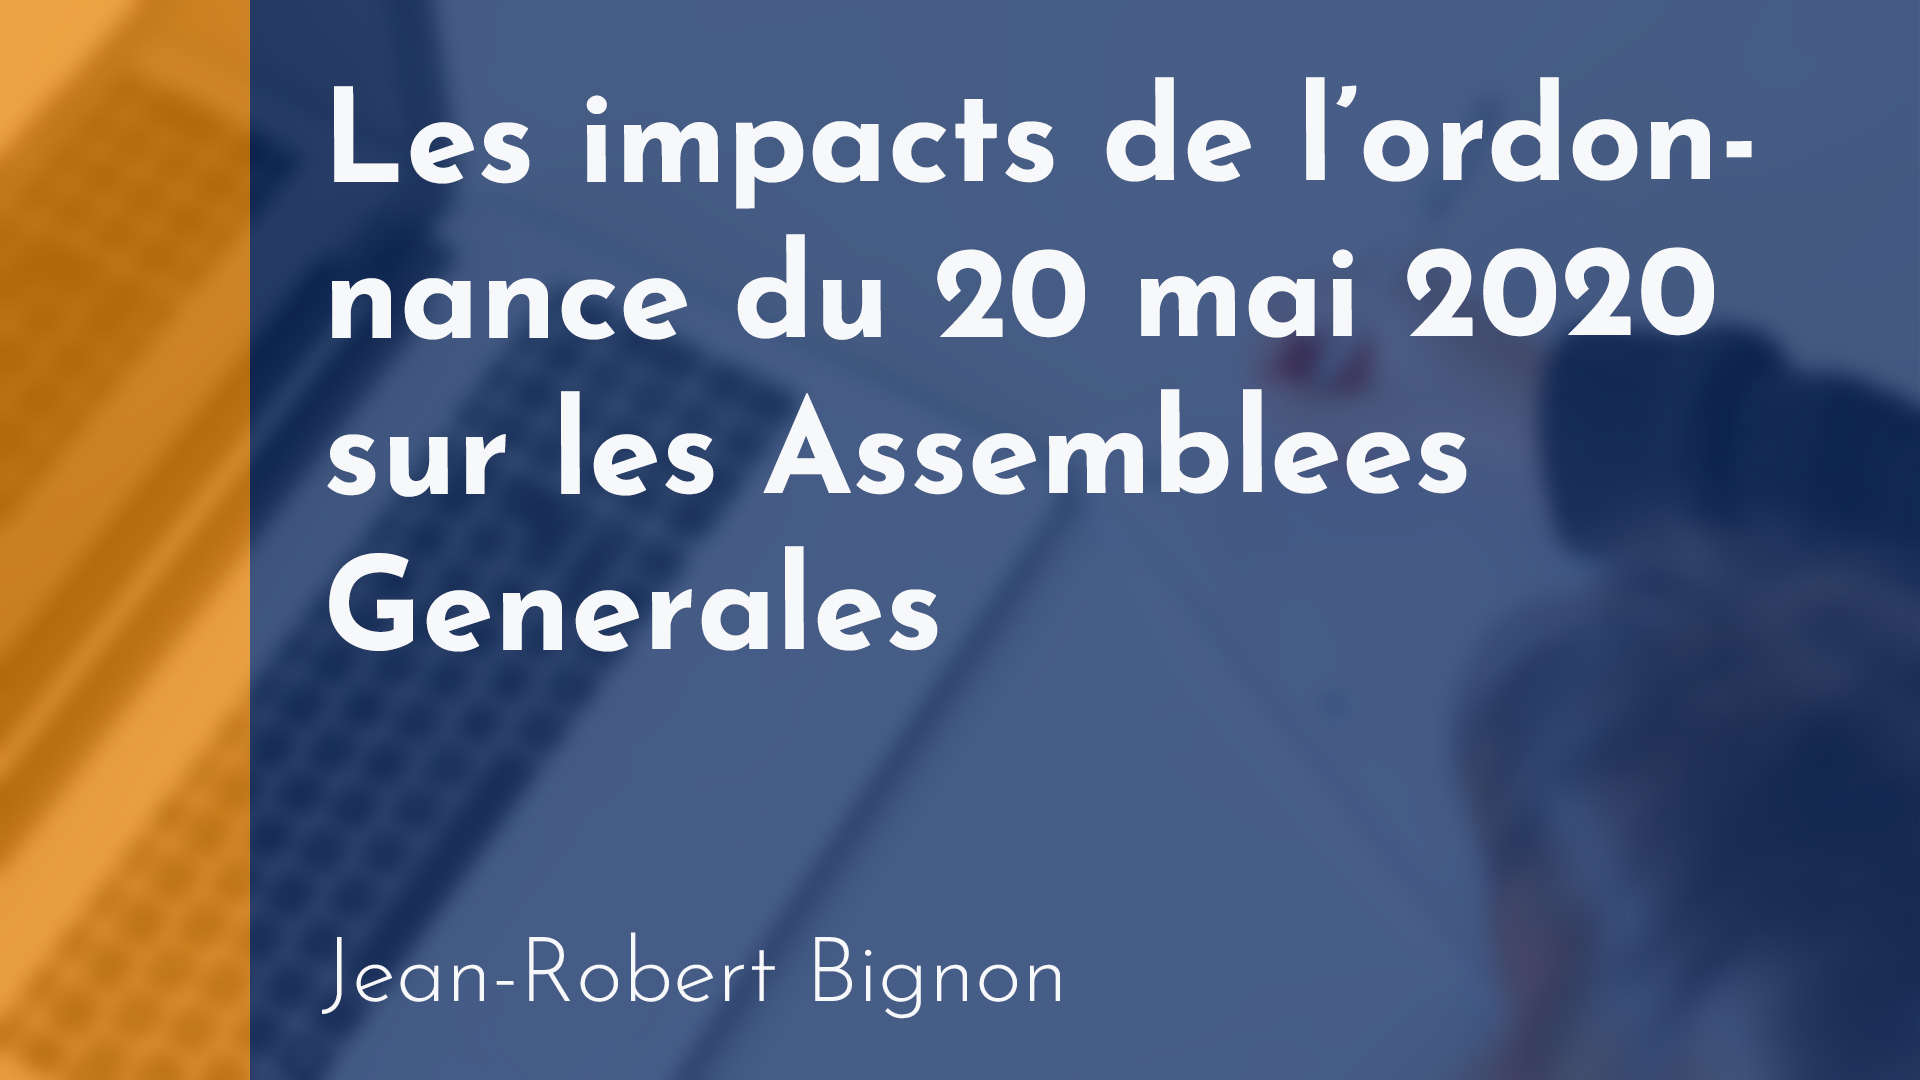 Copropriété - Les impacts de l’ordonnance du 20 mai 2020 sur les Assemblées Générales - Jean-Robert Bignon